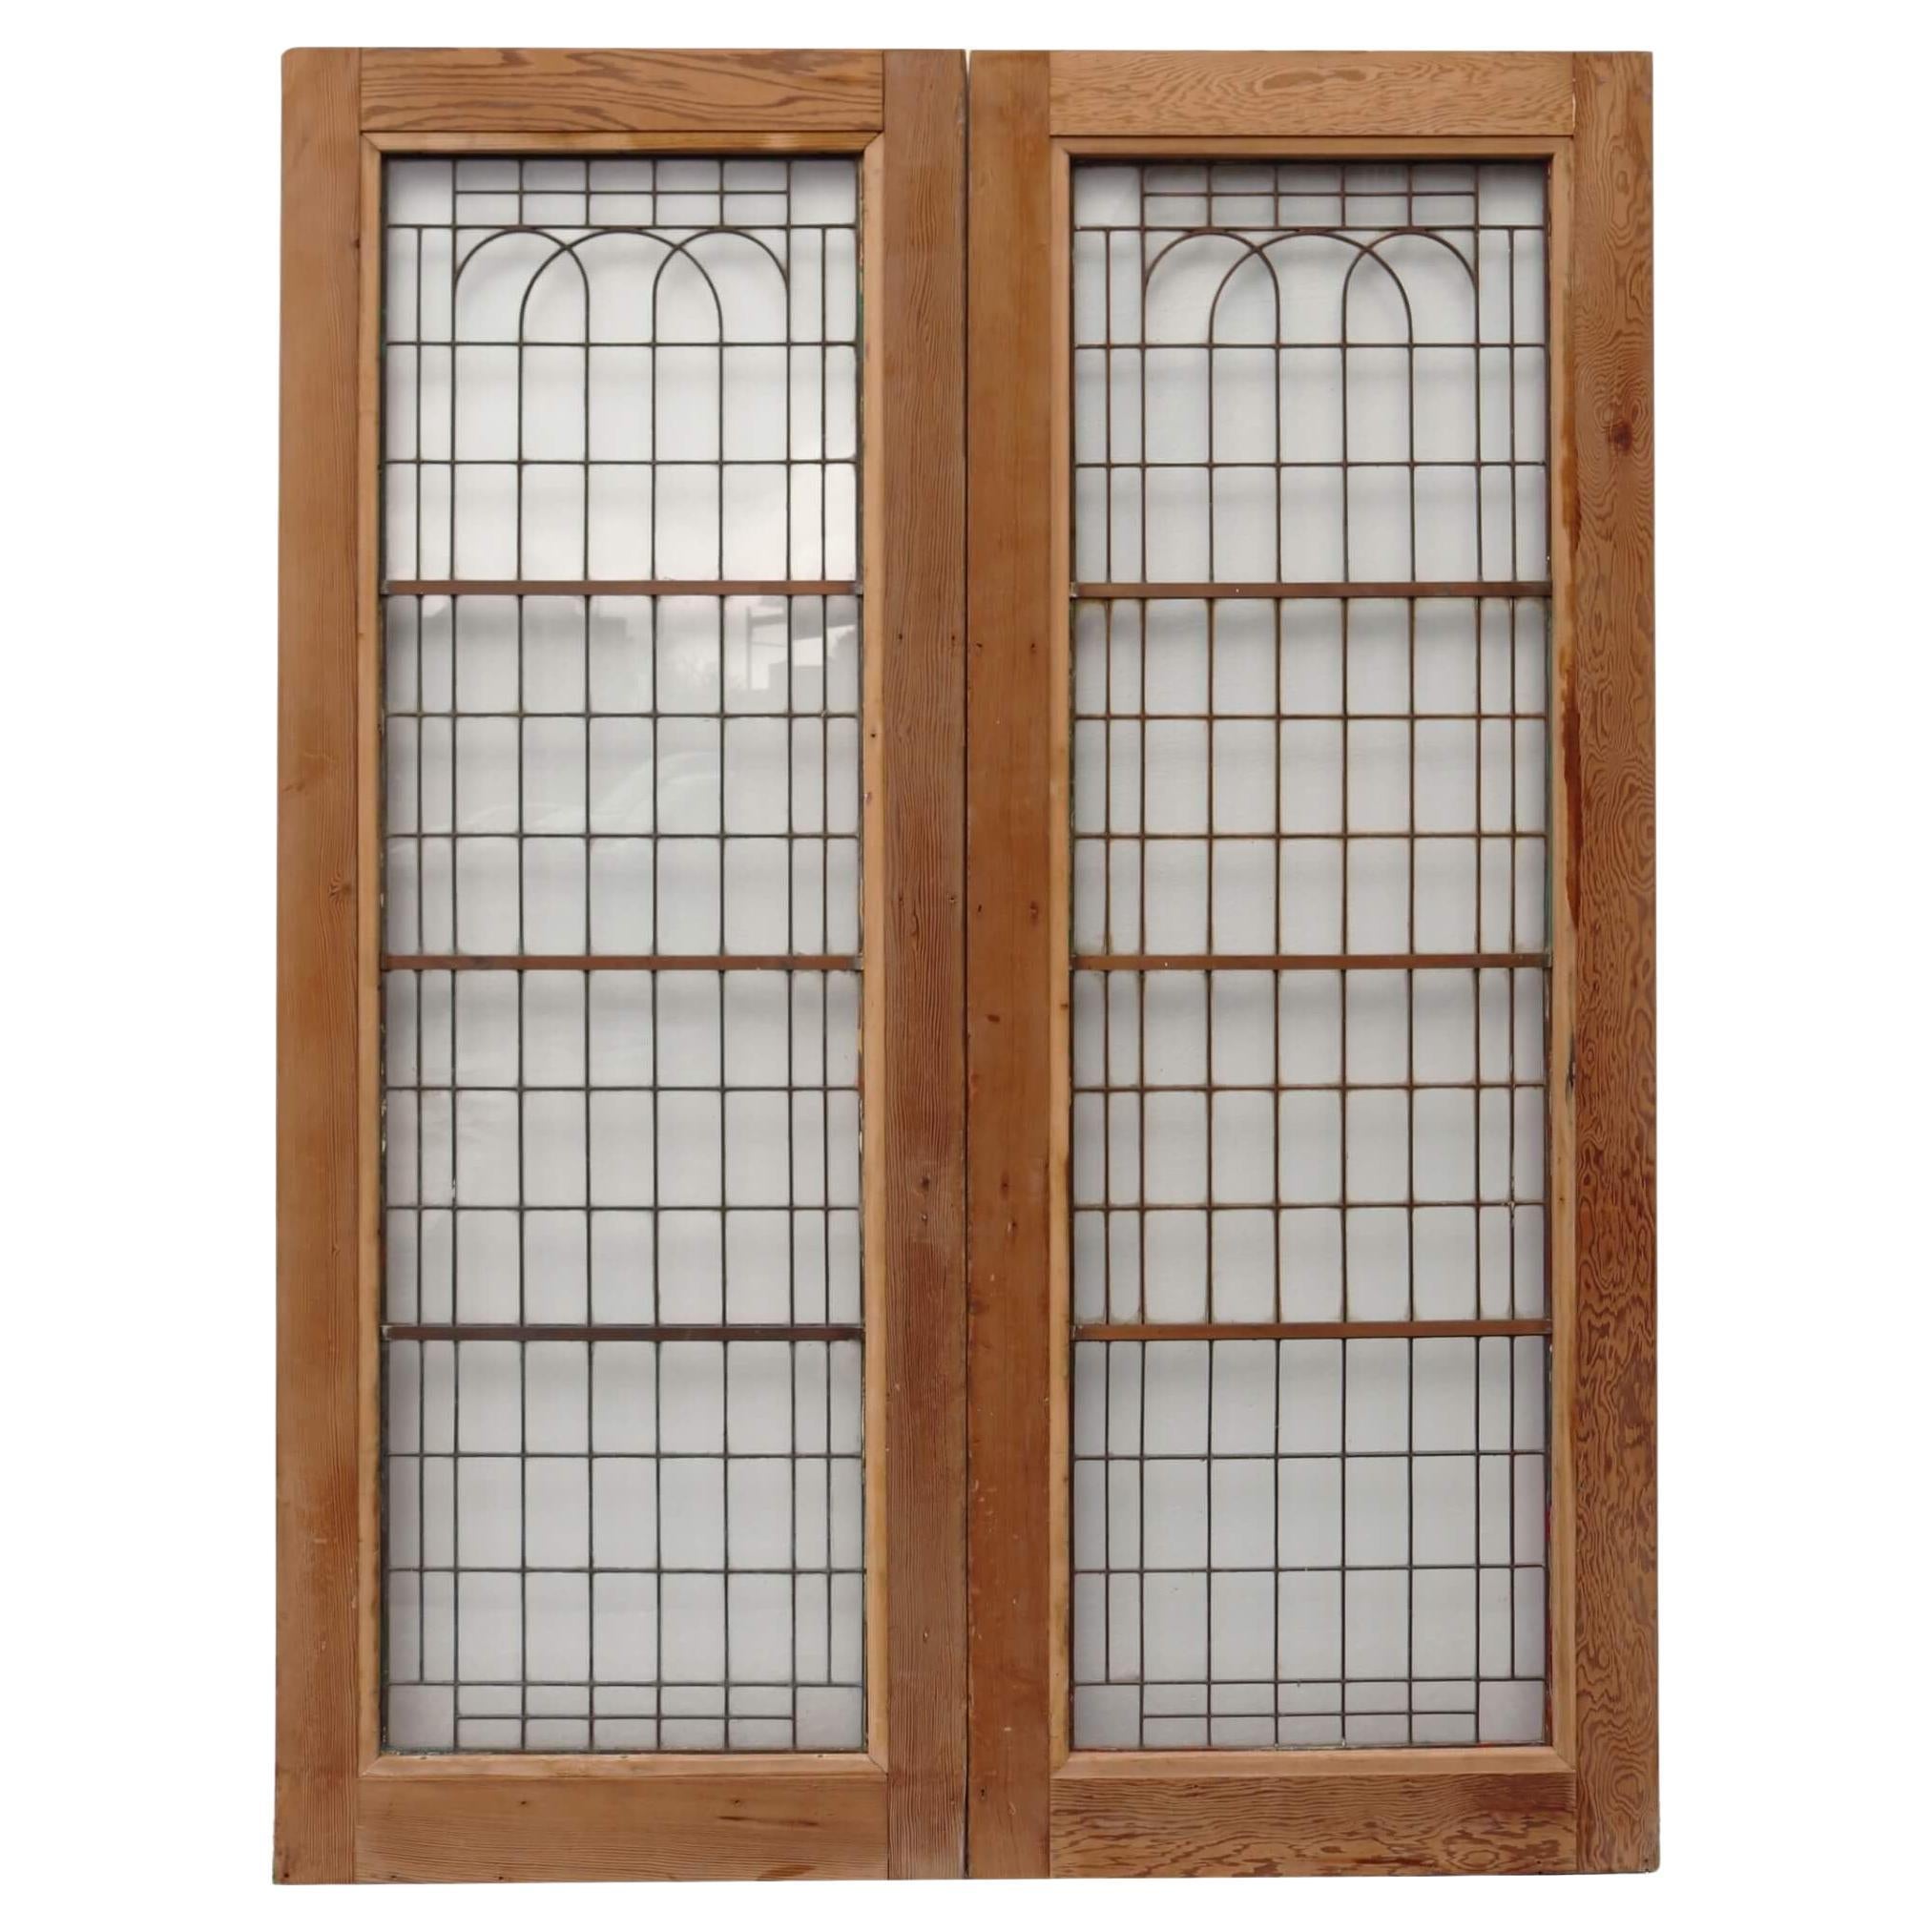 Set of Reclaimed Copperlight Art Deco Double Doors (8)